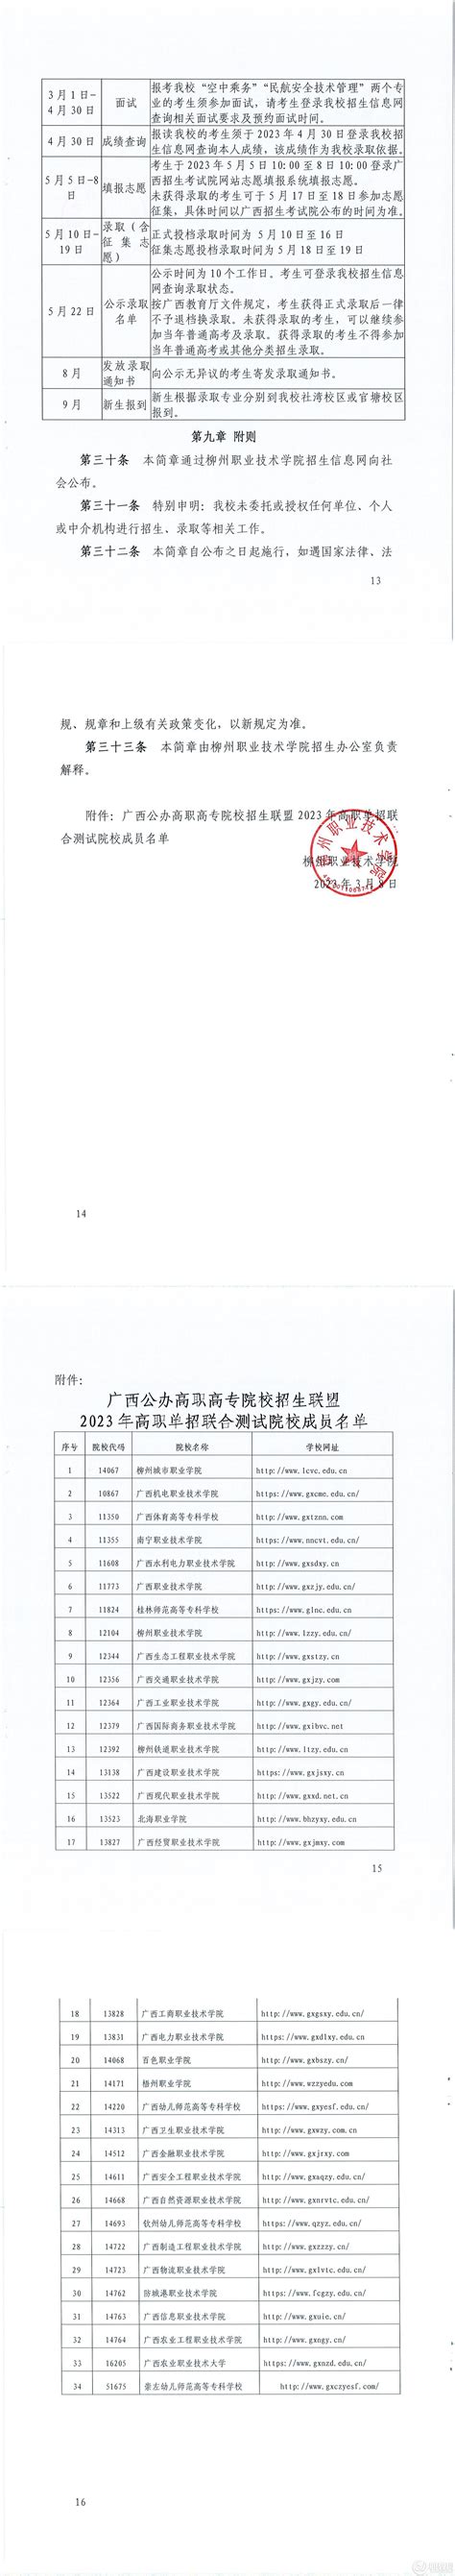 柳州职业技术学院2021年高职对口中职自主招生招生简章 - 职教网